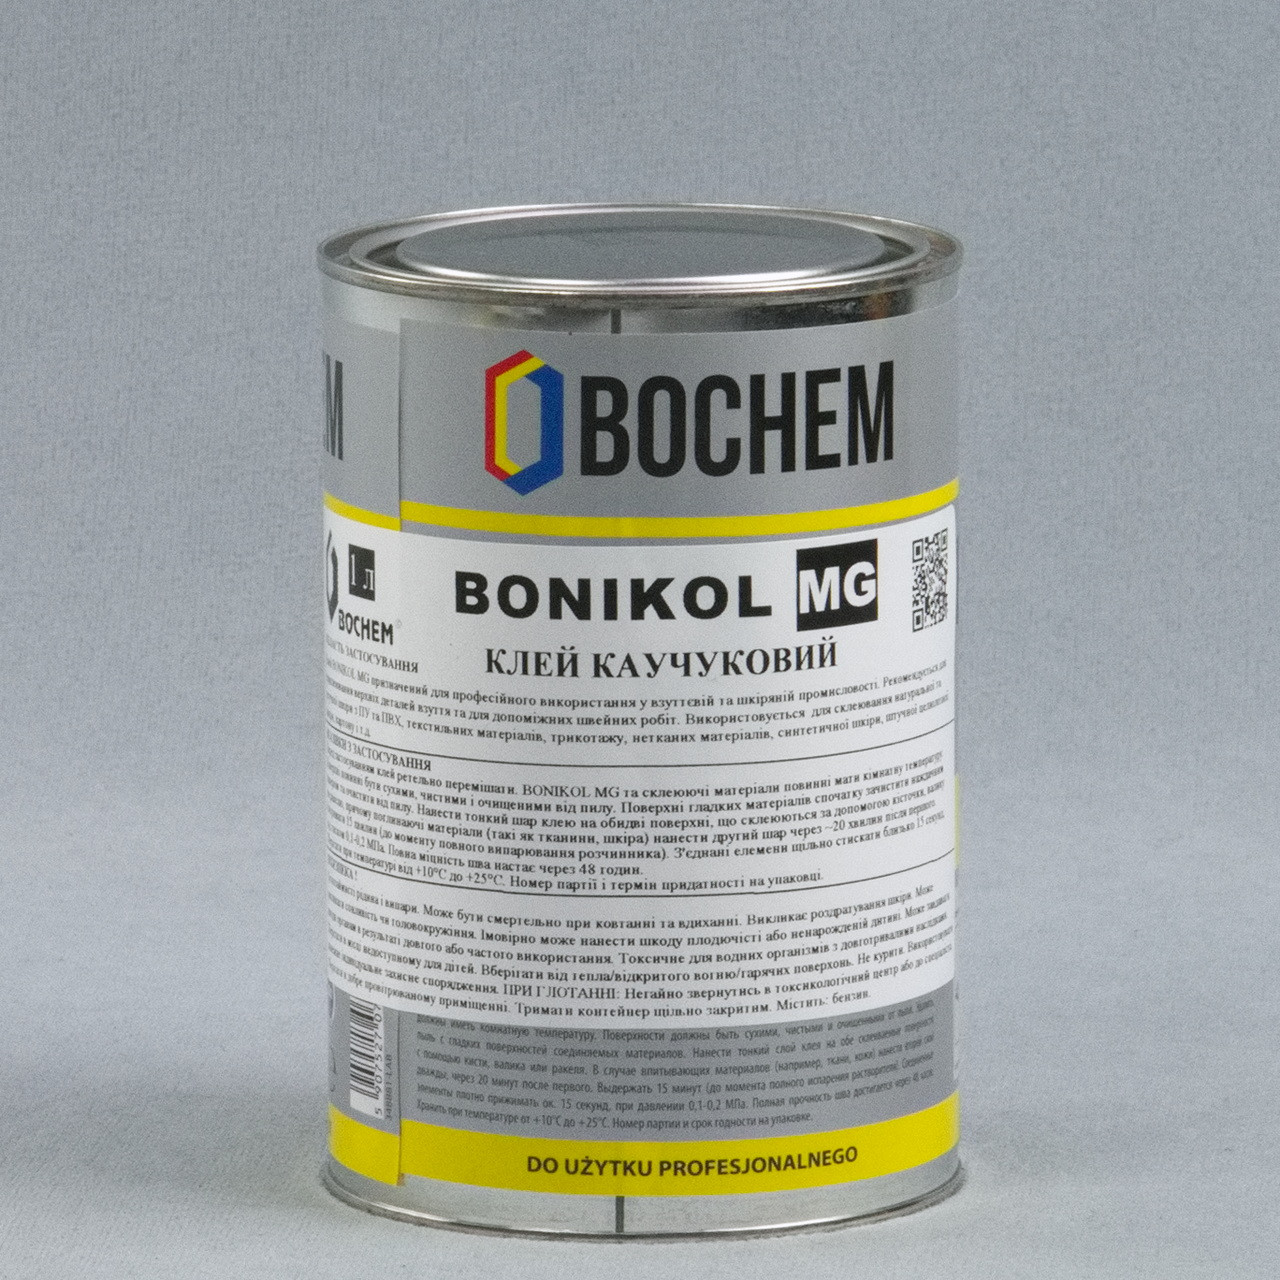 Клей BONIKOL MG 0,7 кг (гумовий) на основі натурального каучуку для склеювання тканин, гуми, шкіри детальна фотка